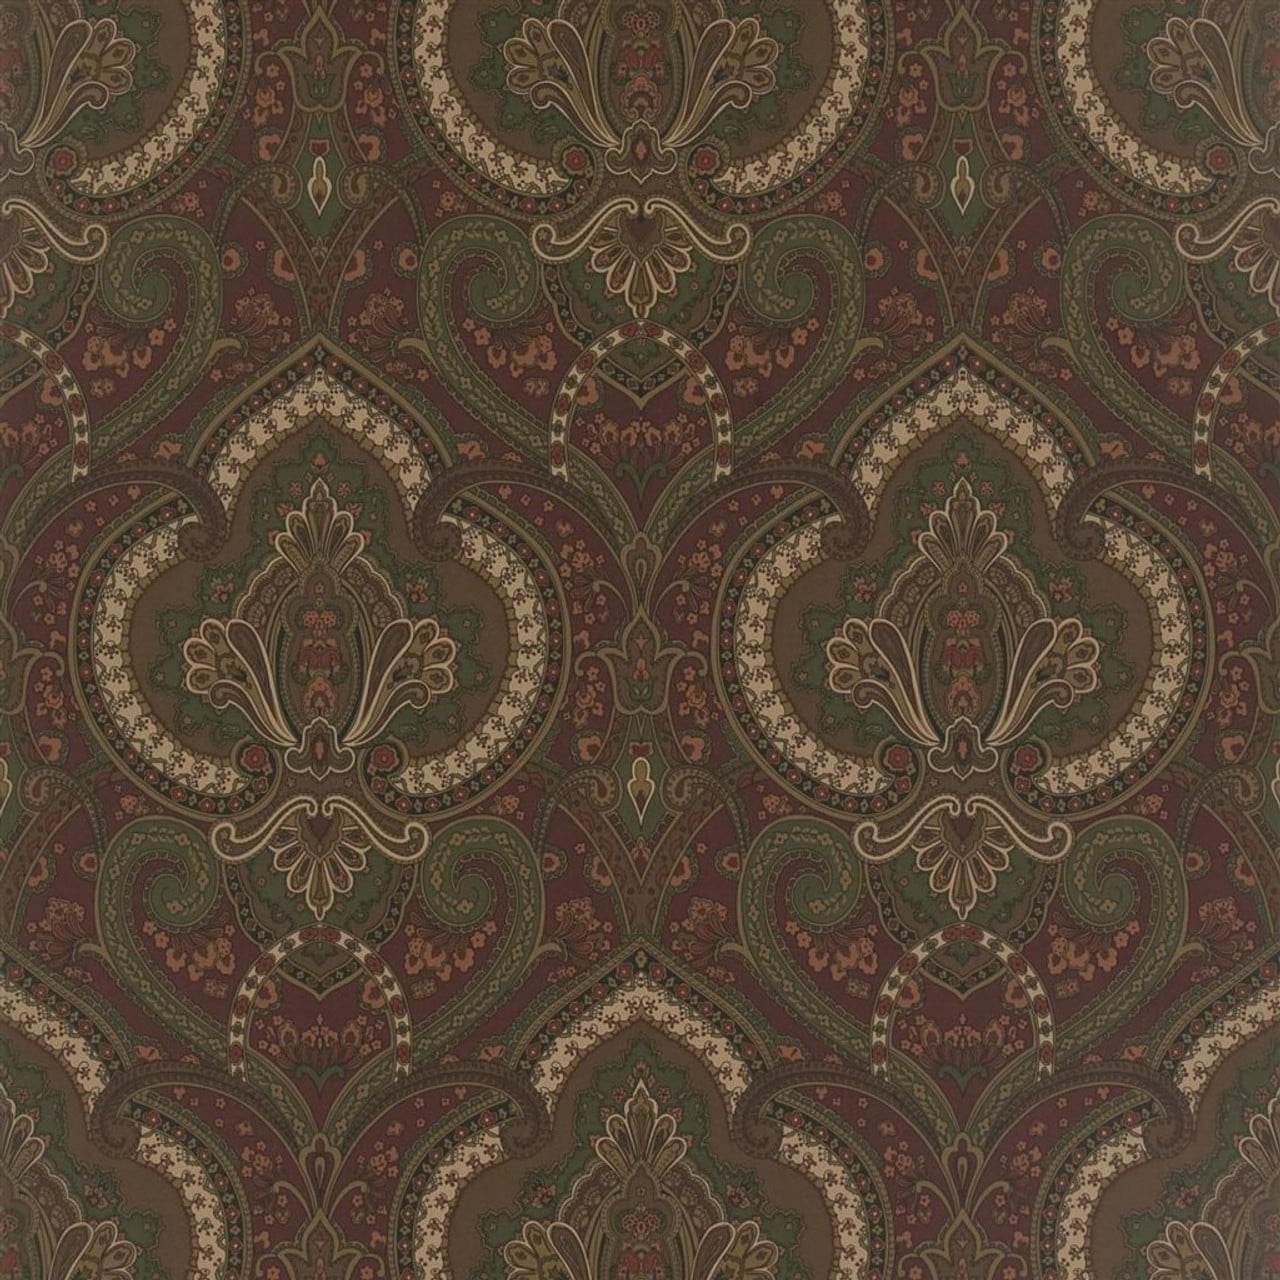 Castlehead Paisley Wallpaper in Chestnut | Silk Interiors Wallpaper ...